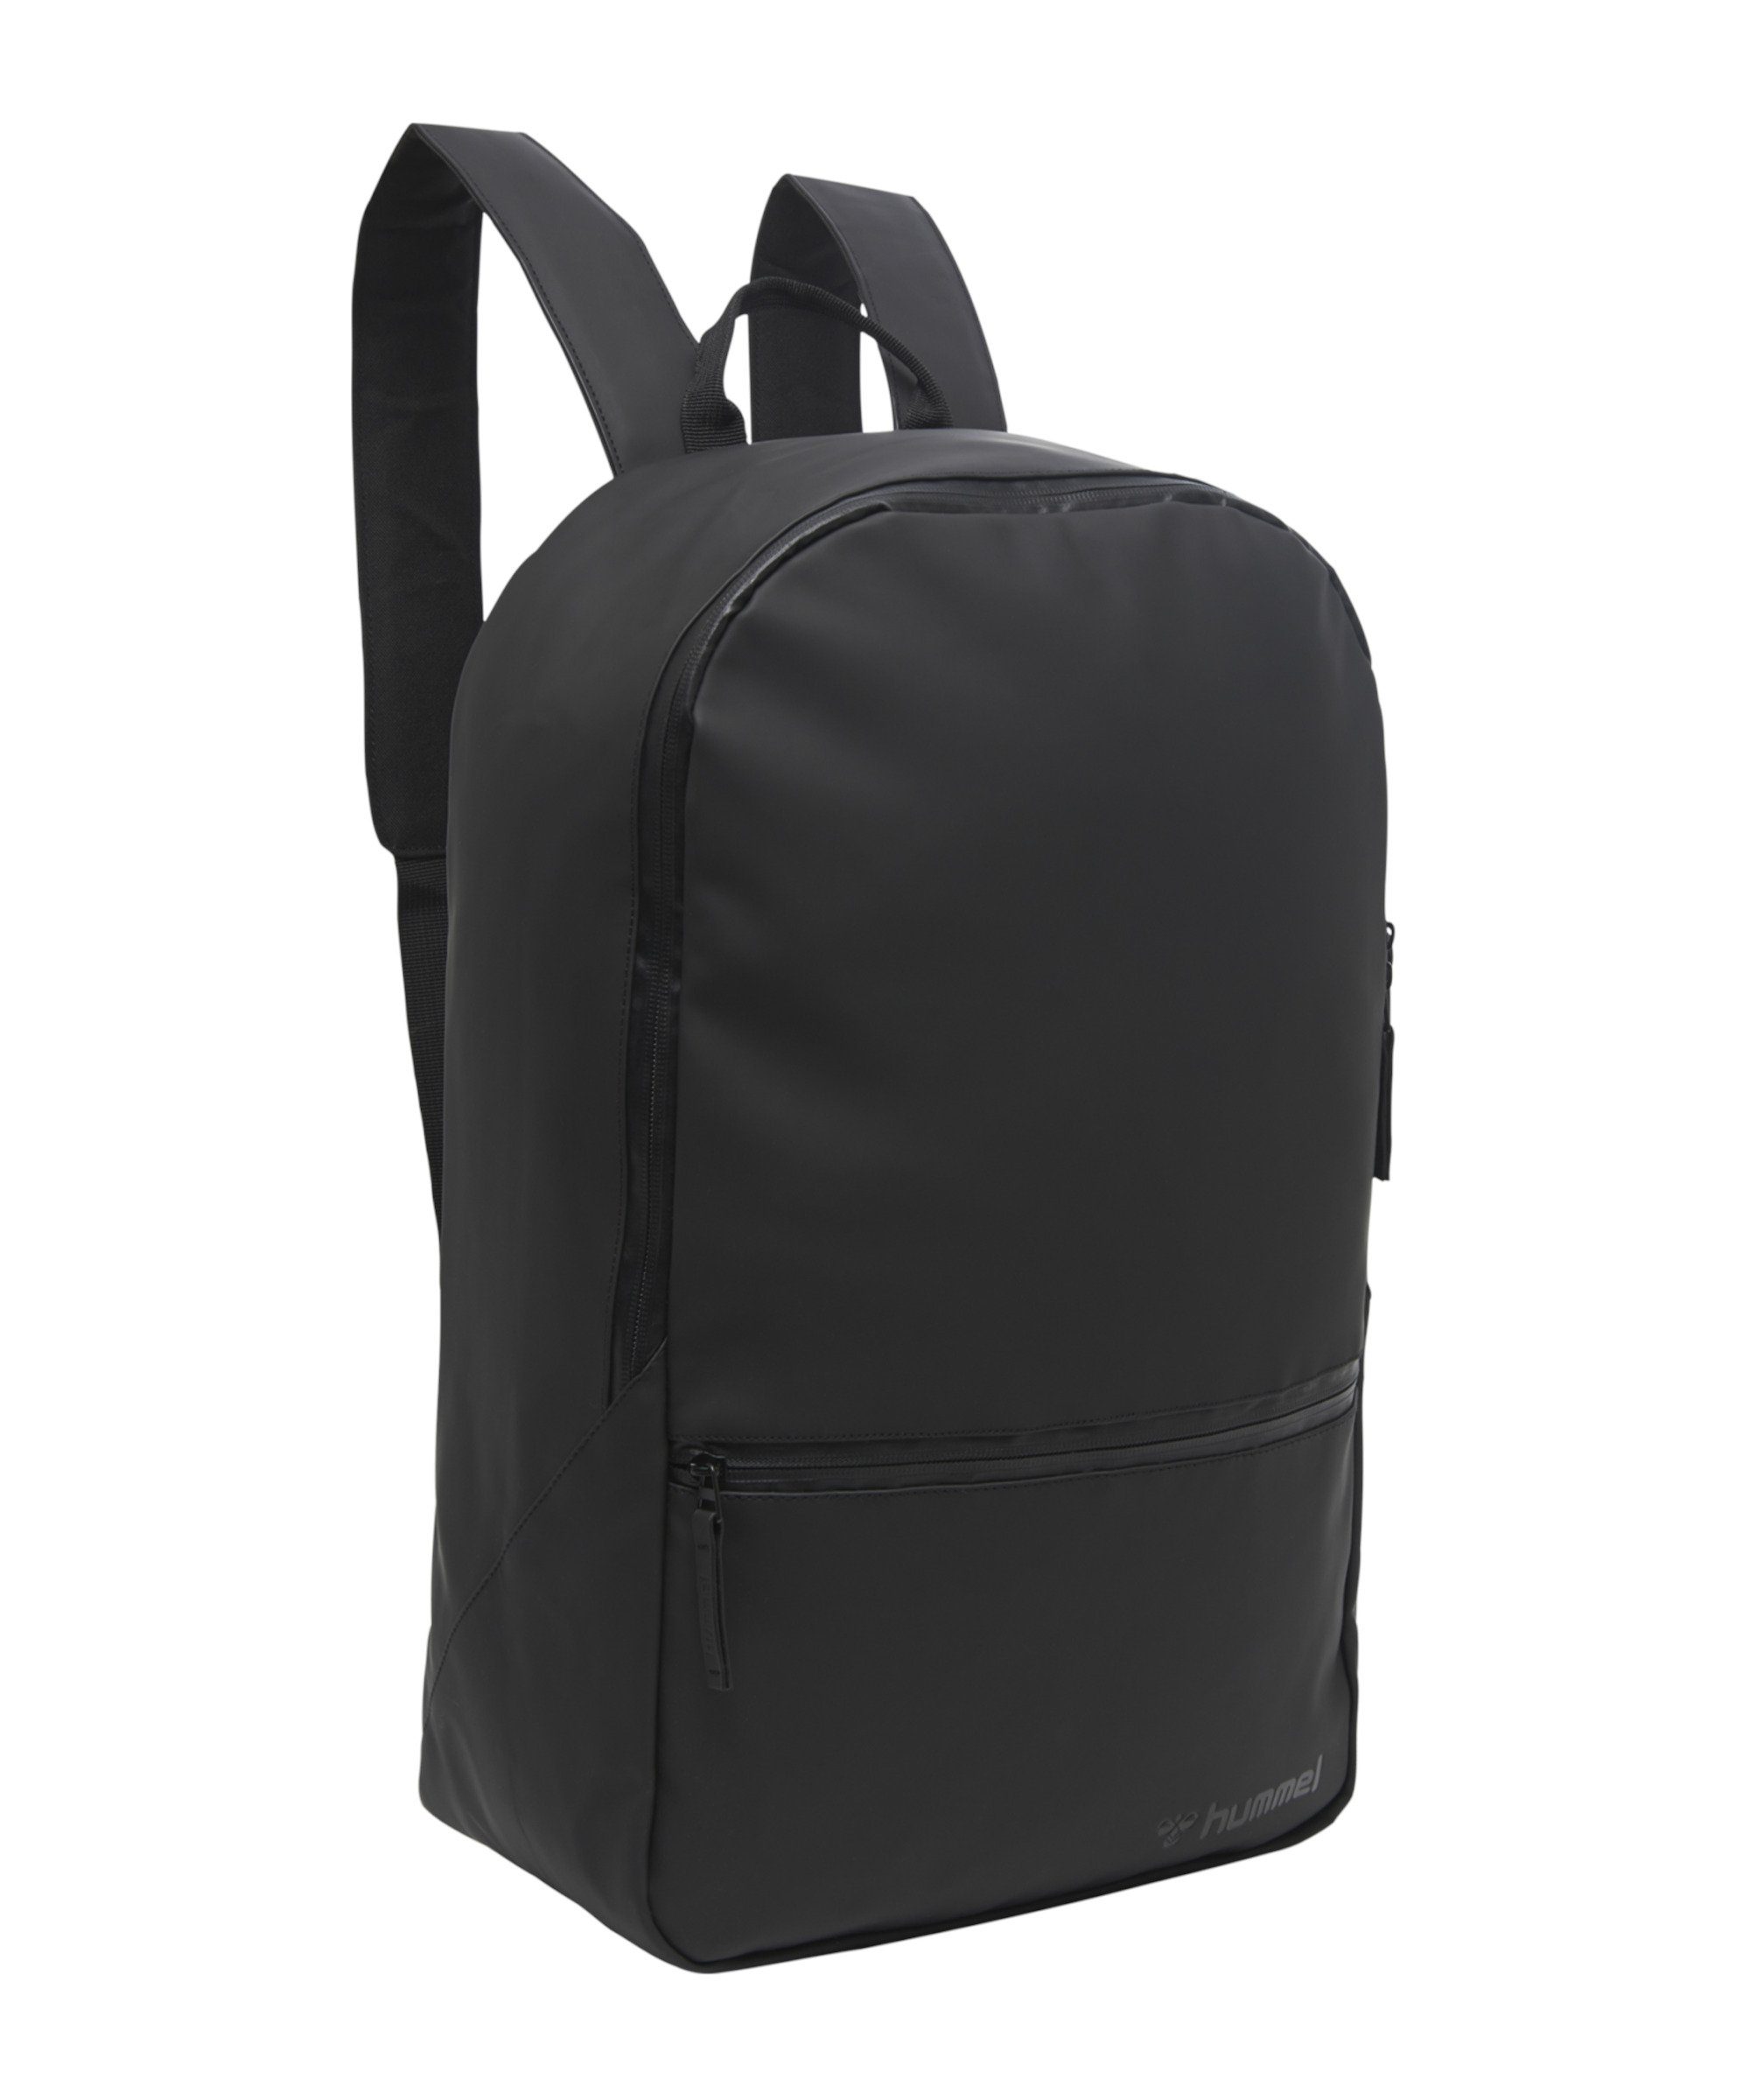 hummel Backpack, Lifestyle Polsterung Freizeittasche Rucksack